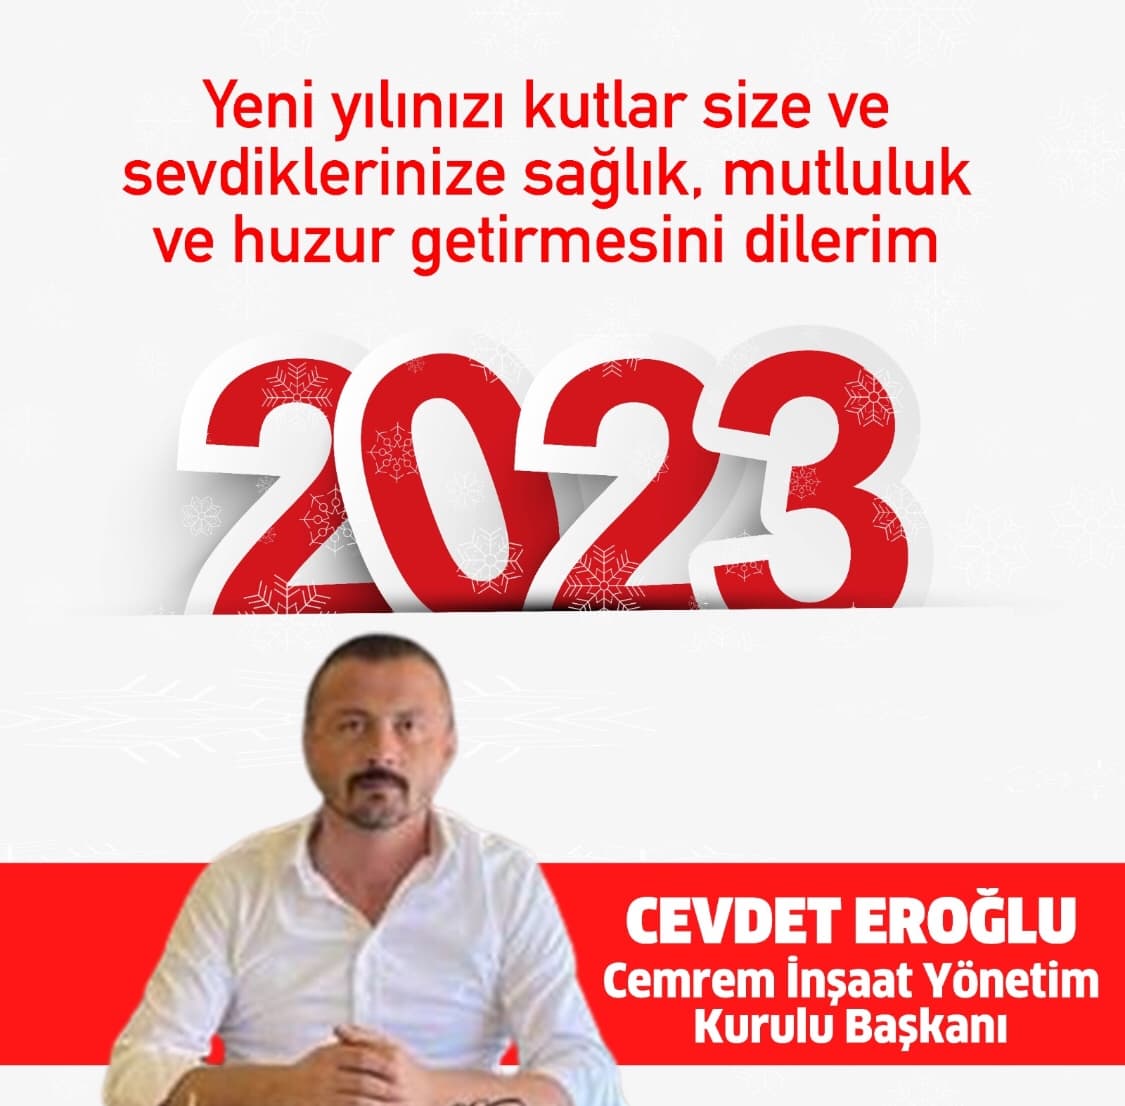 Cevdet Eroğlu